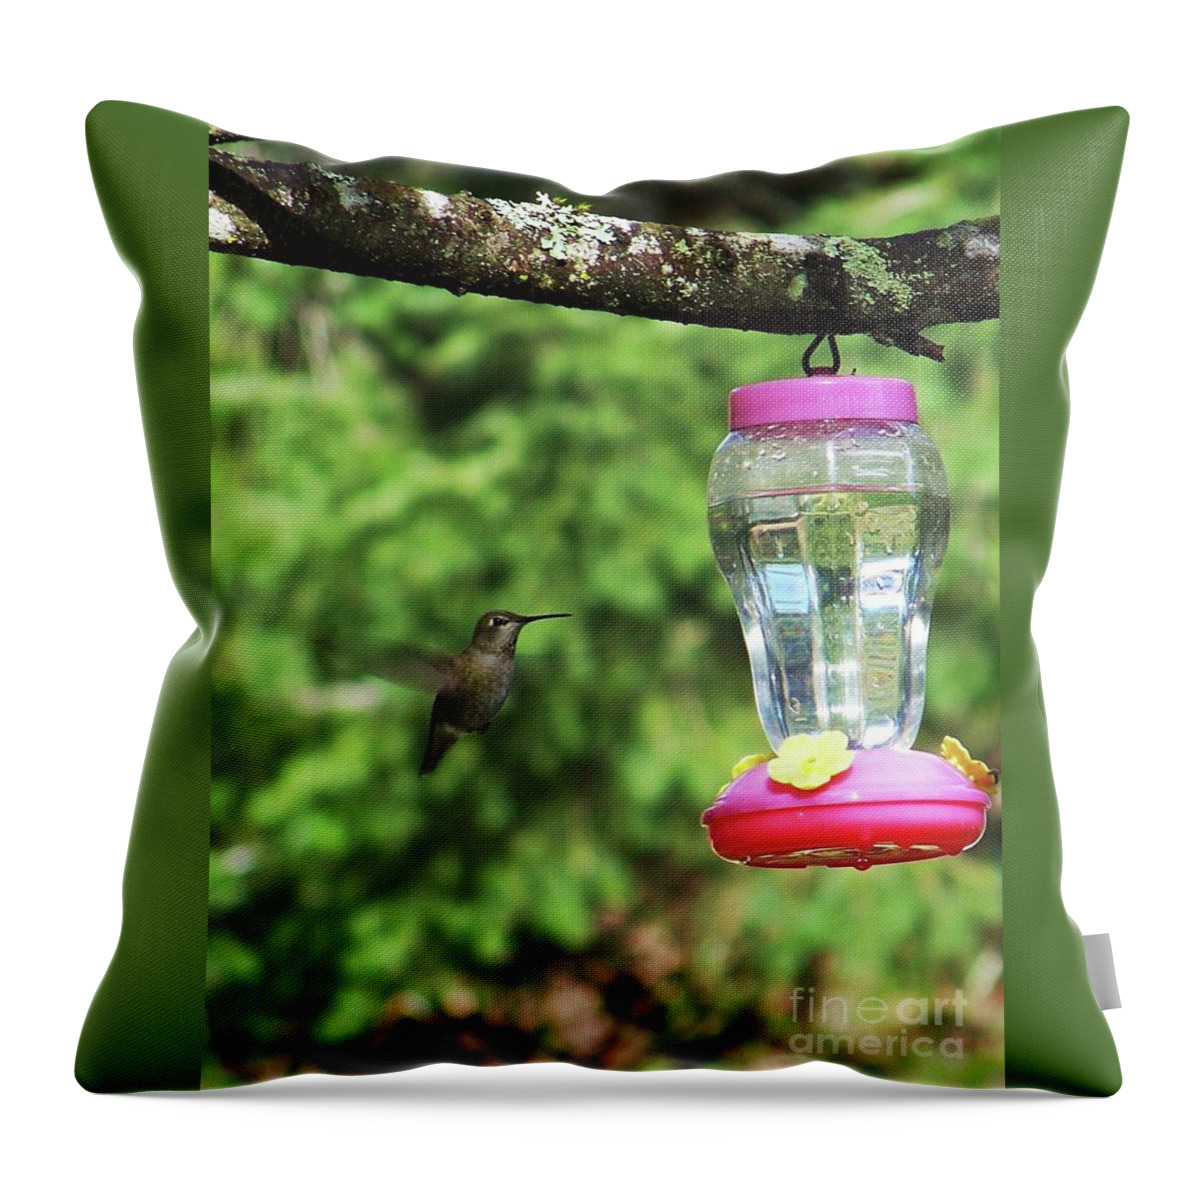 Hummingbird Throw Pillow featuring the photograph My Winter Hummingbird by Julie Rauscher